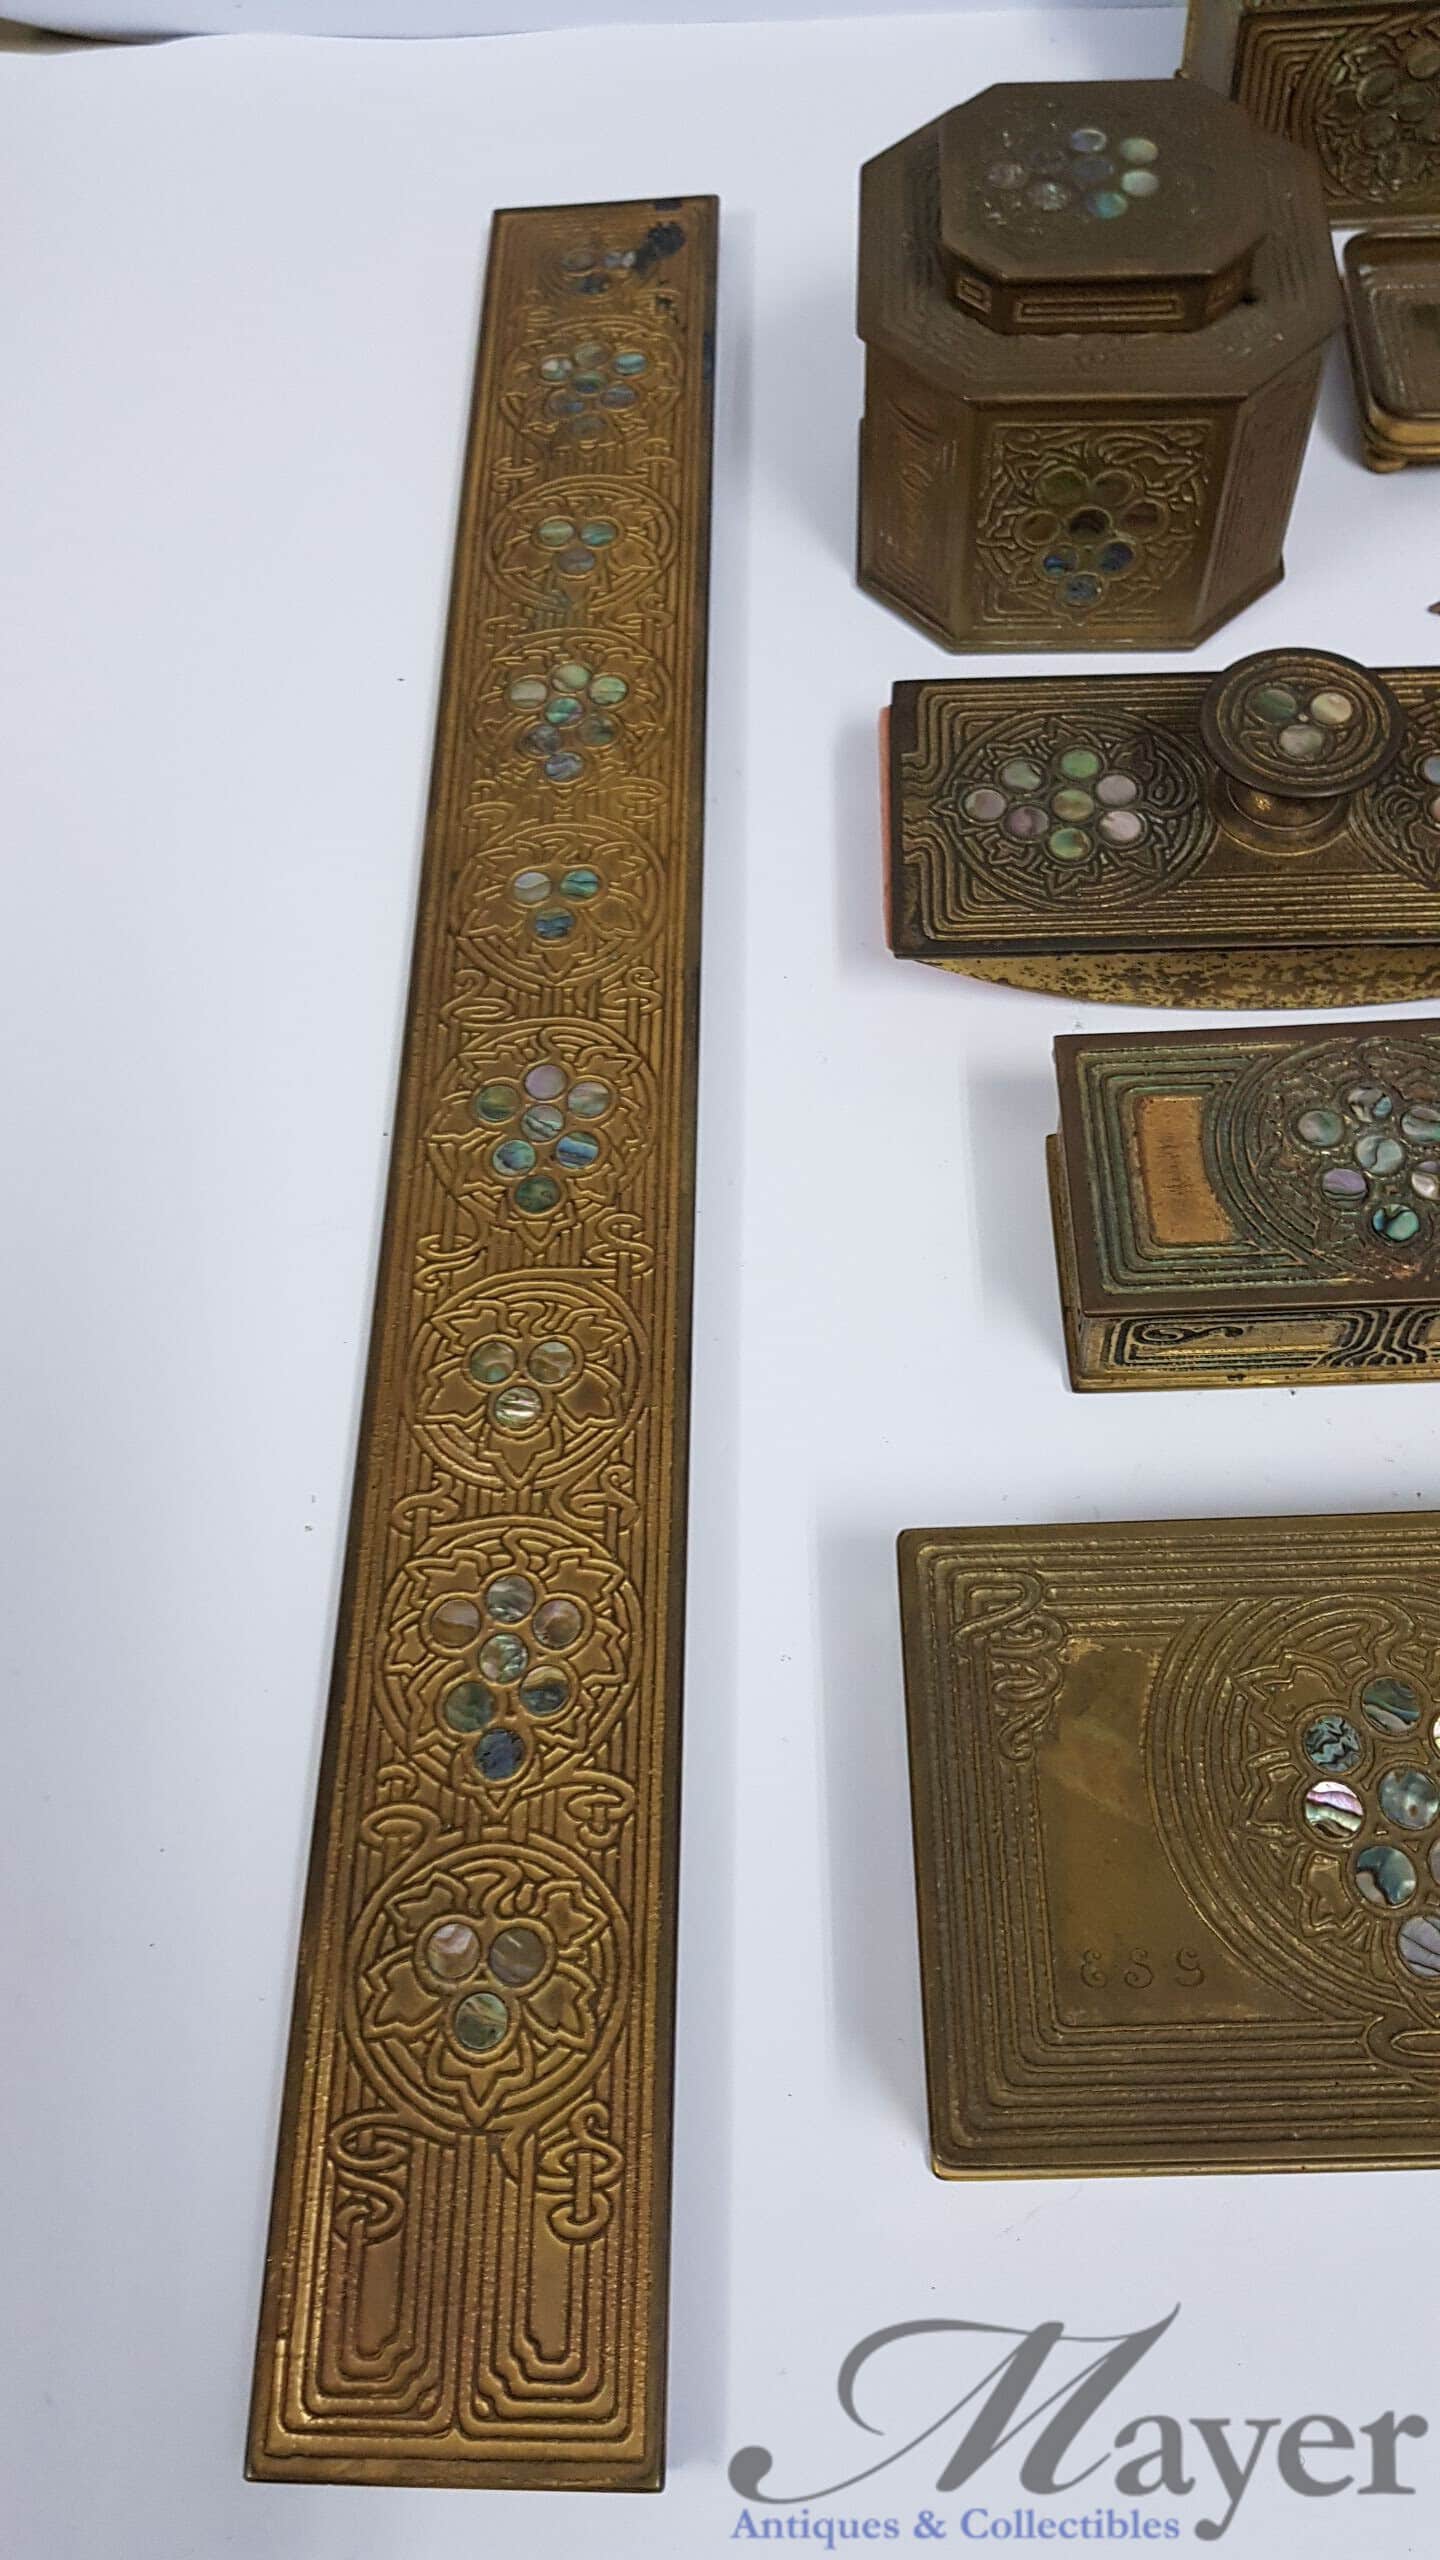 Greek Mythology Copper Plate - Vintage Copper plates